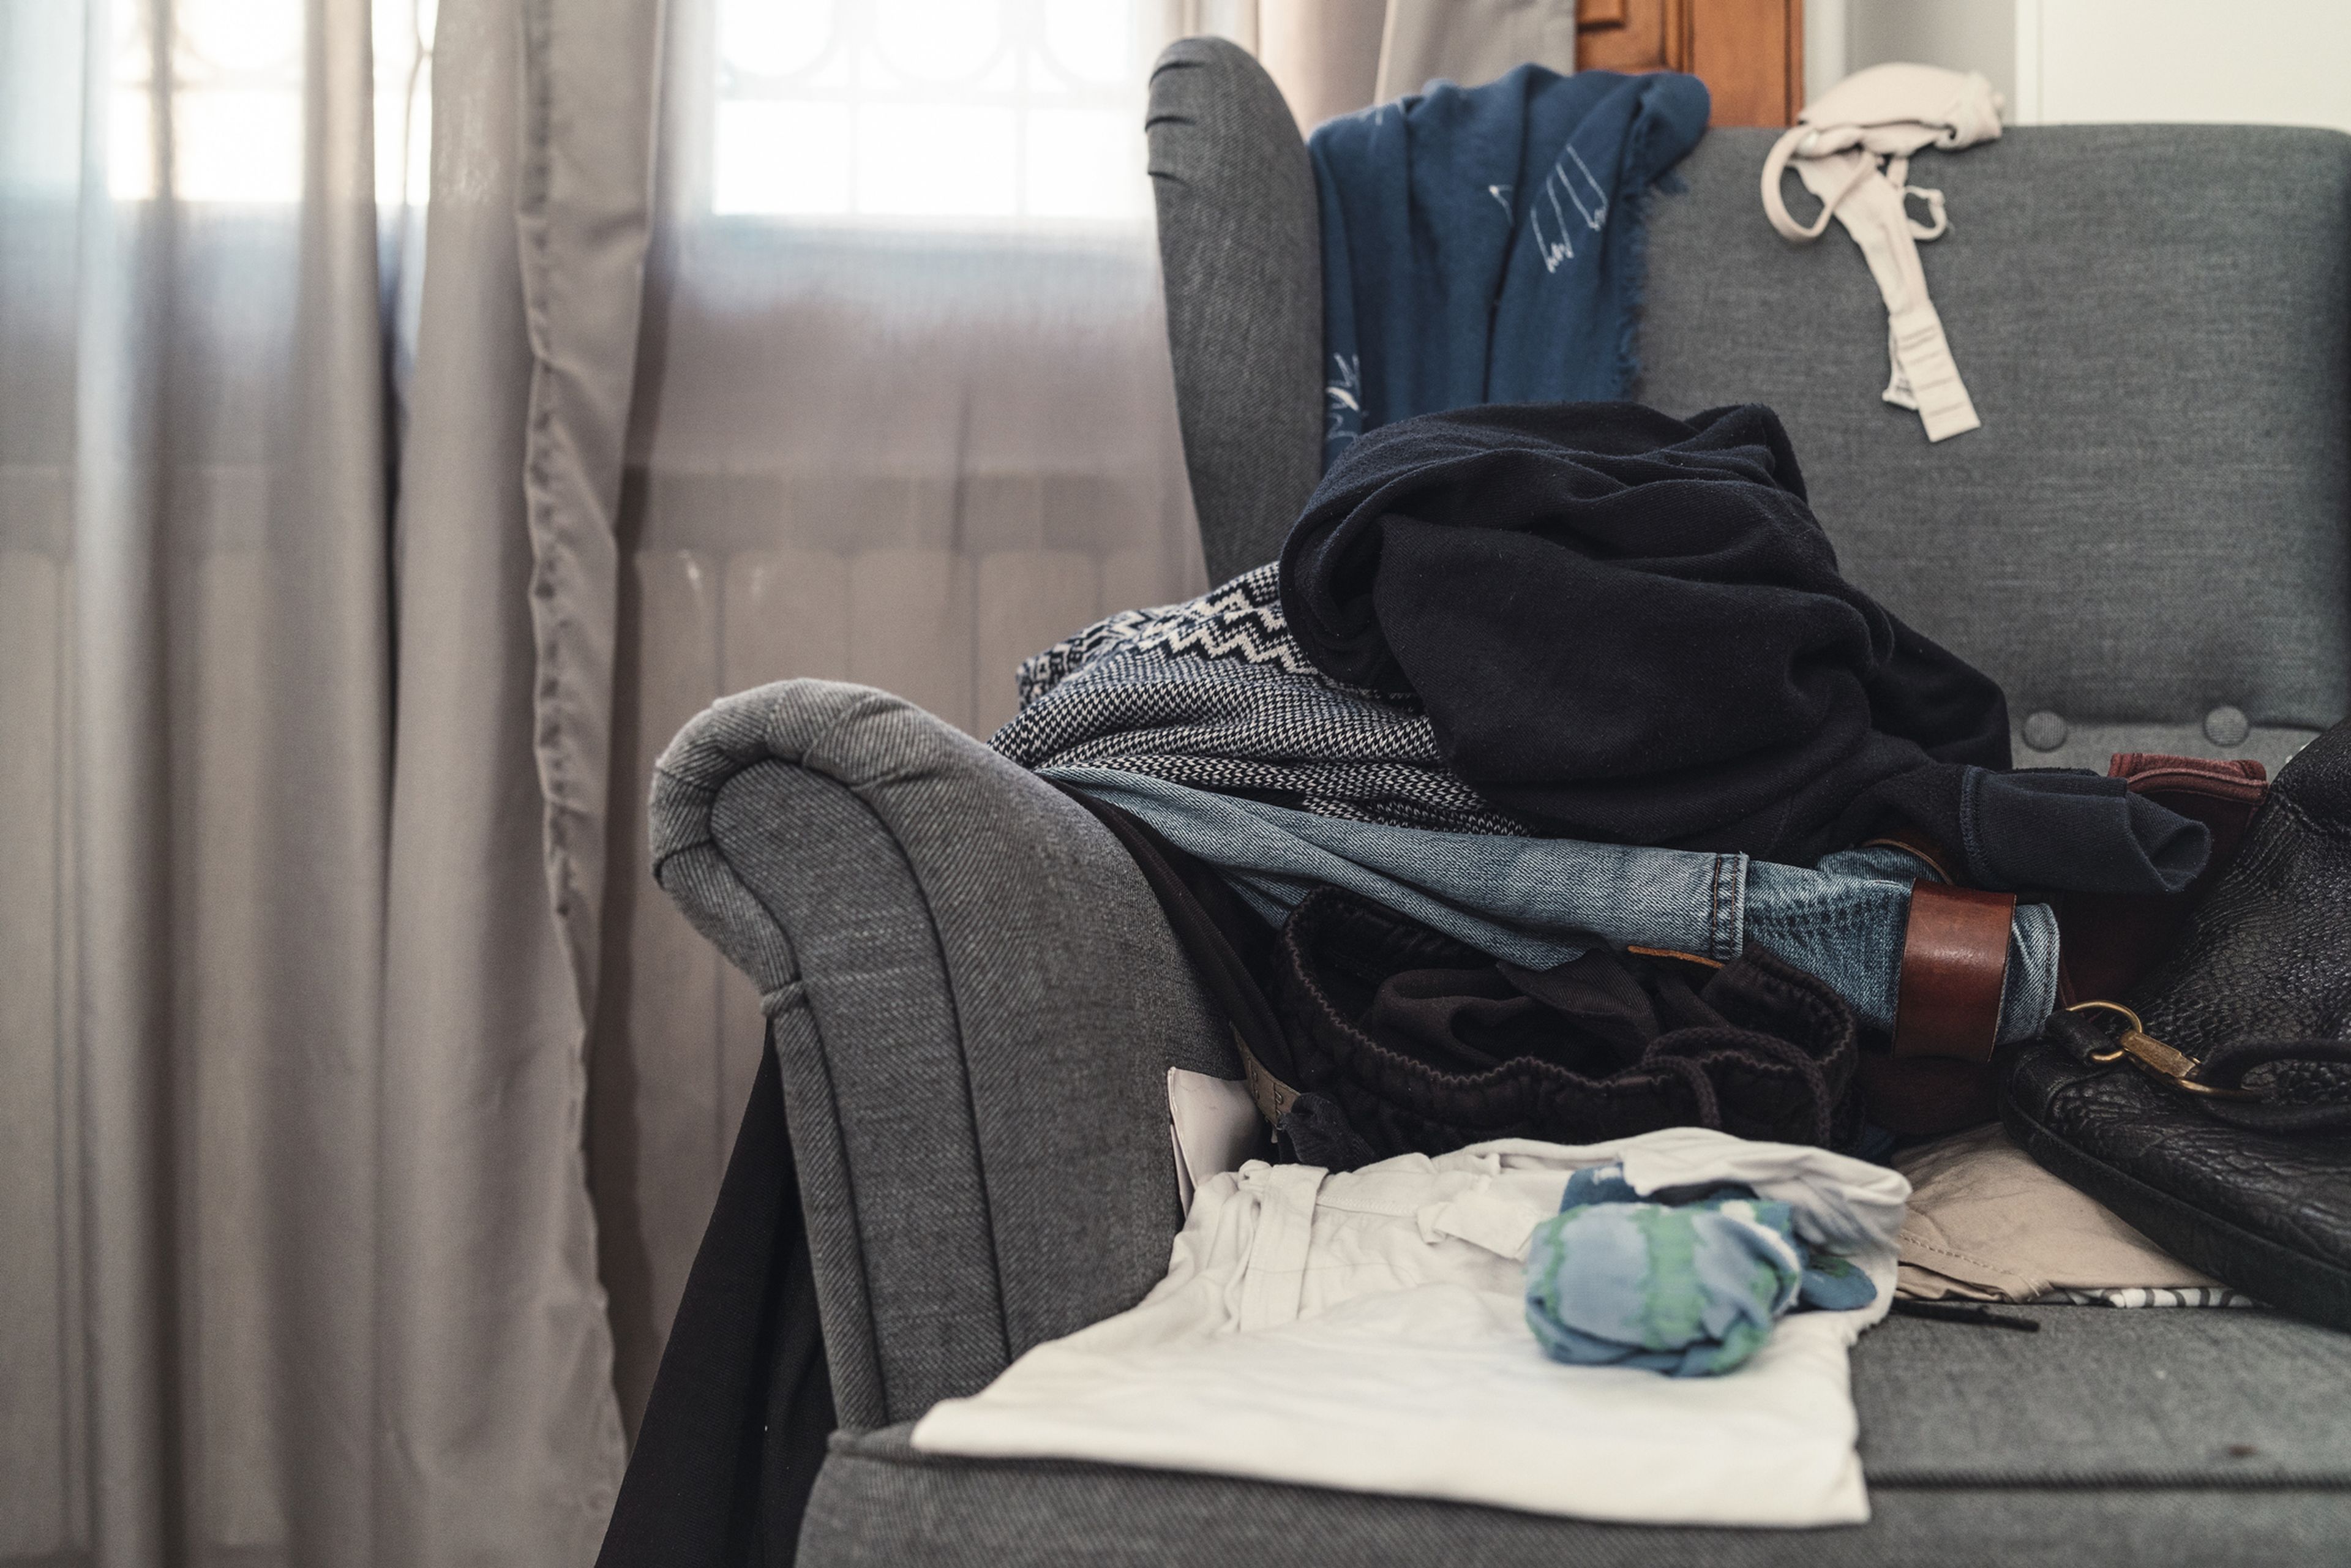 Los mejores trucos para organizar la ropa y acabar con el caos de tu armario